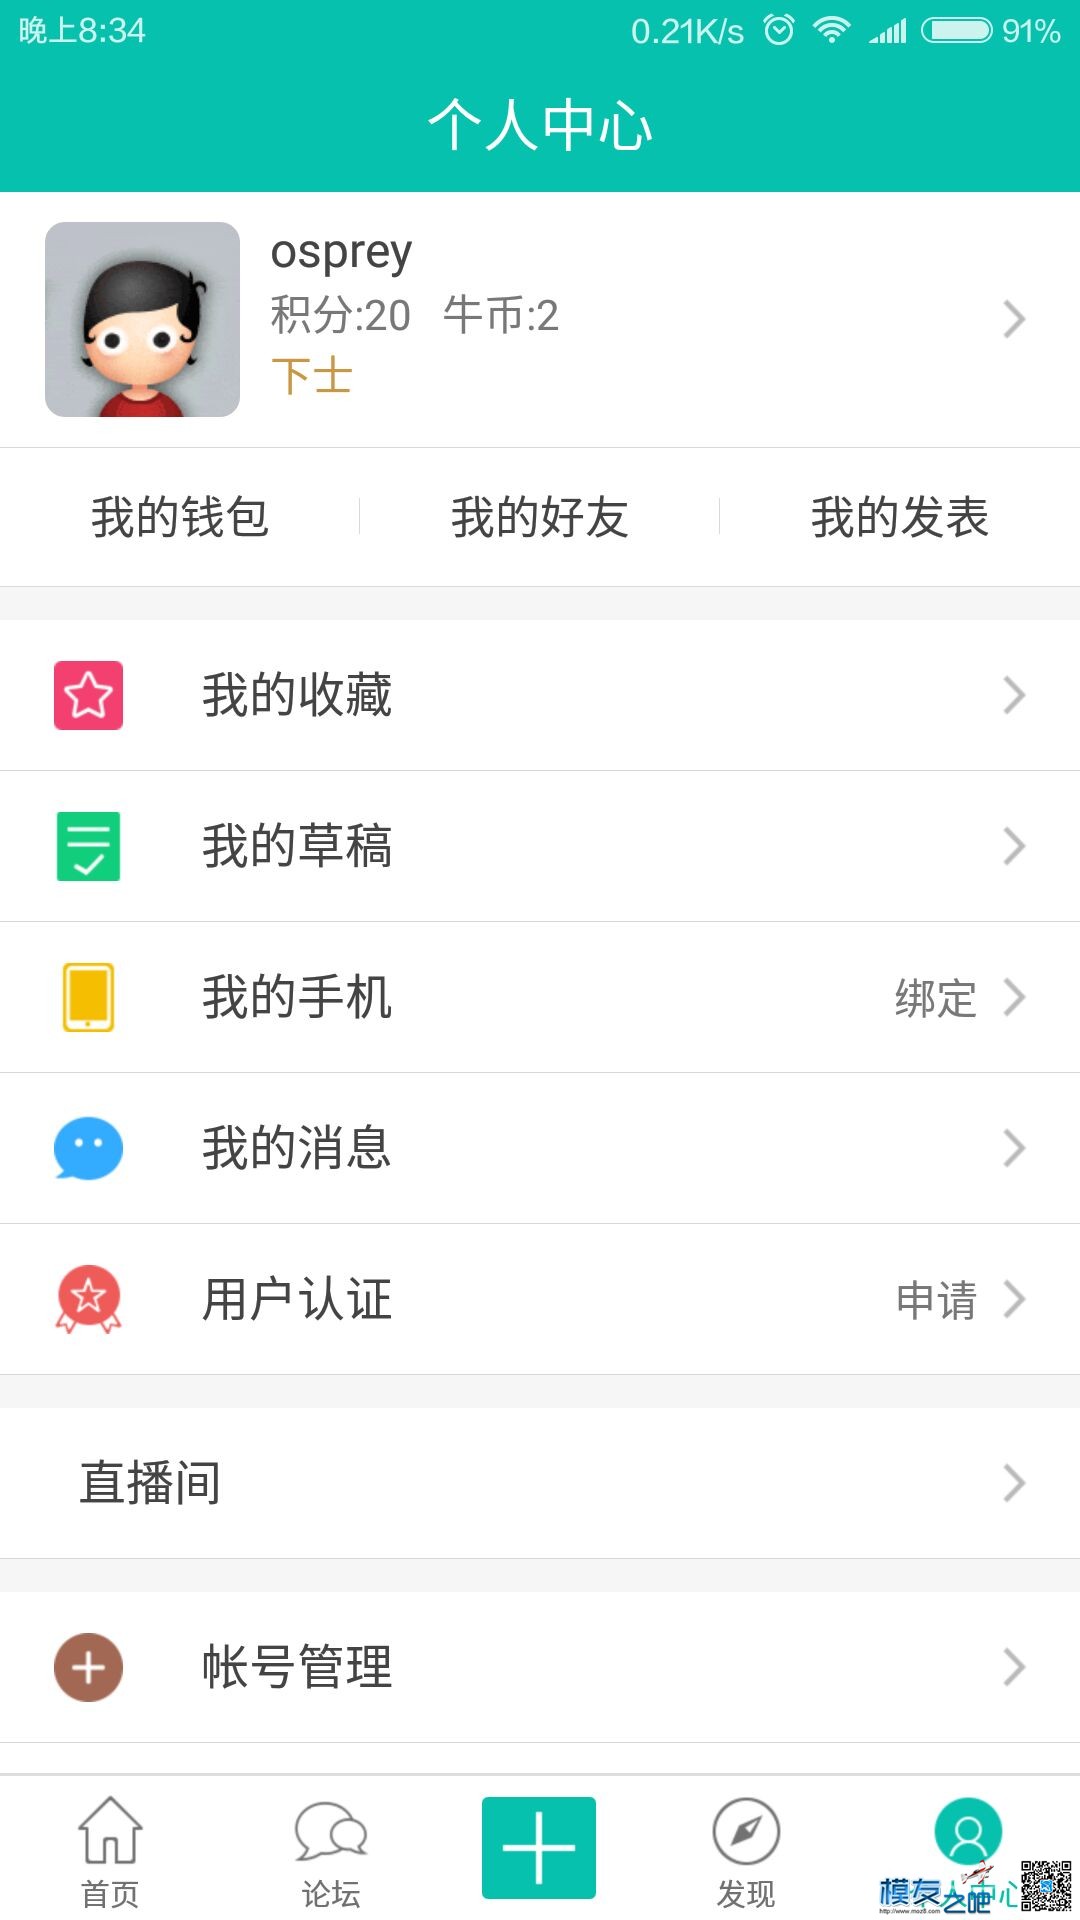 【模友之吧】100个aomway5.8G-500mw图传用于论坛推广！  作者:zhangyiyun2014 3301 